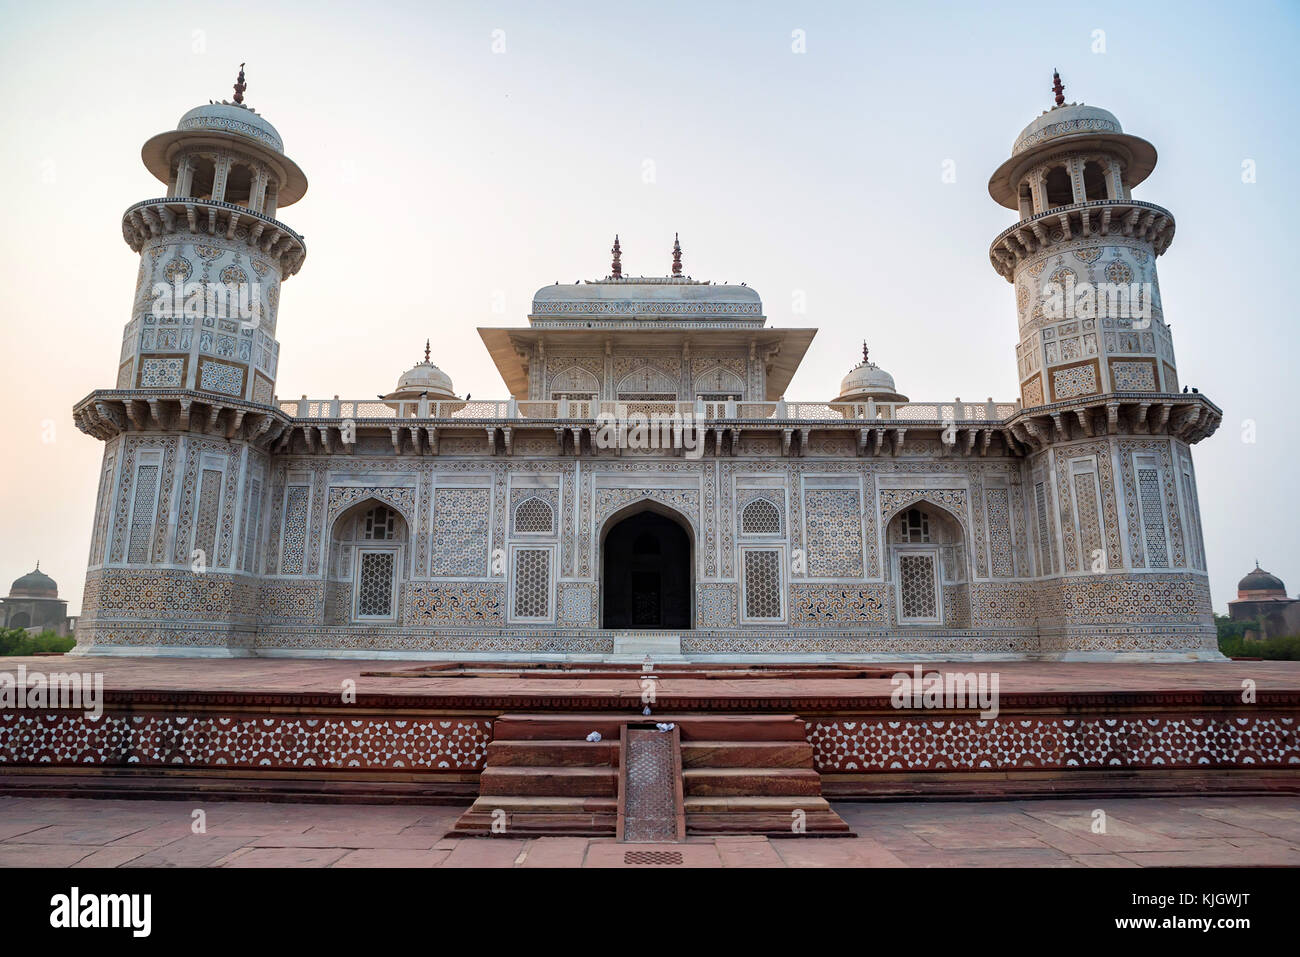 Itimad-ud-Daulah or Baby Taj in Agra, India Stock Photo